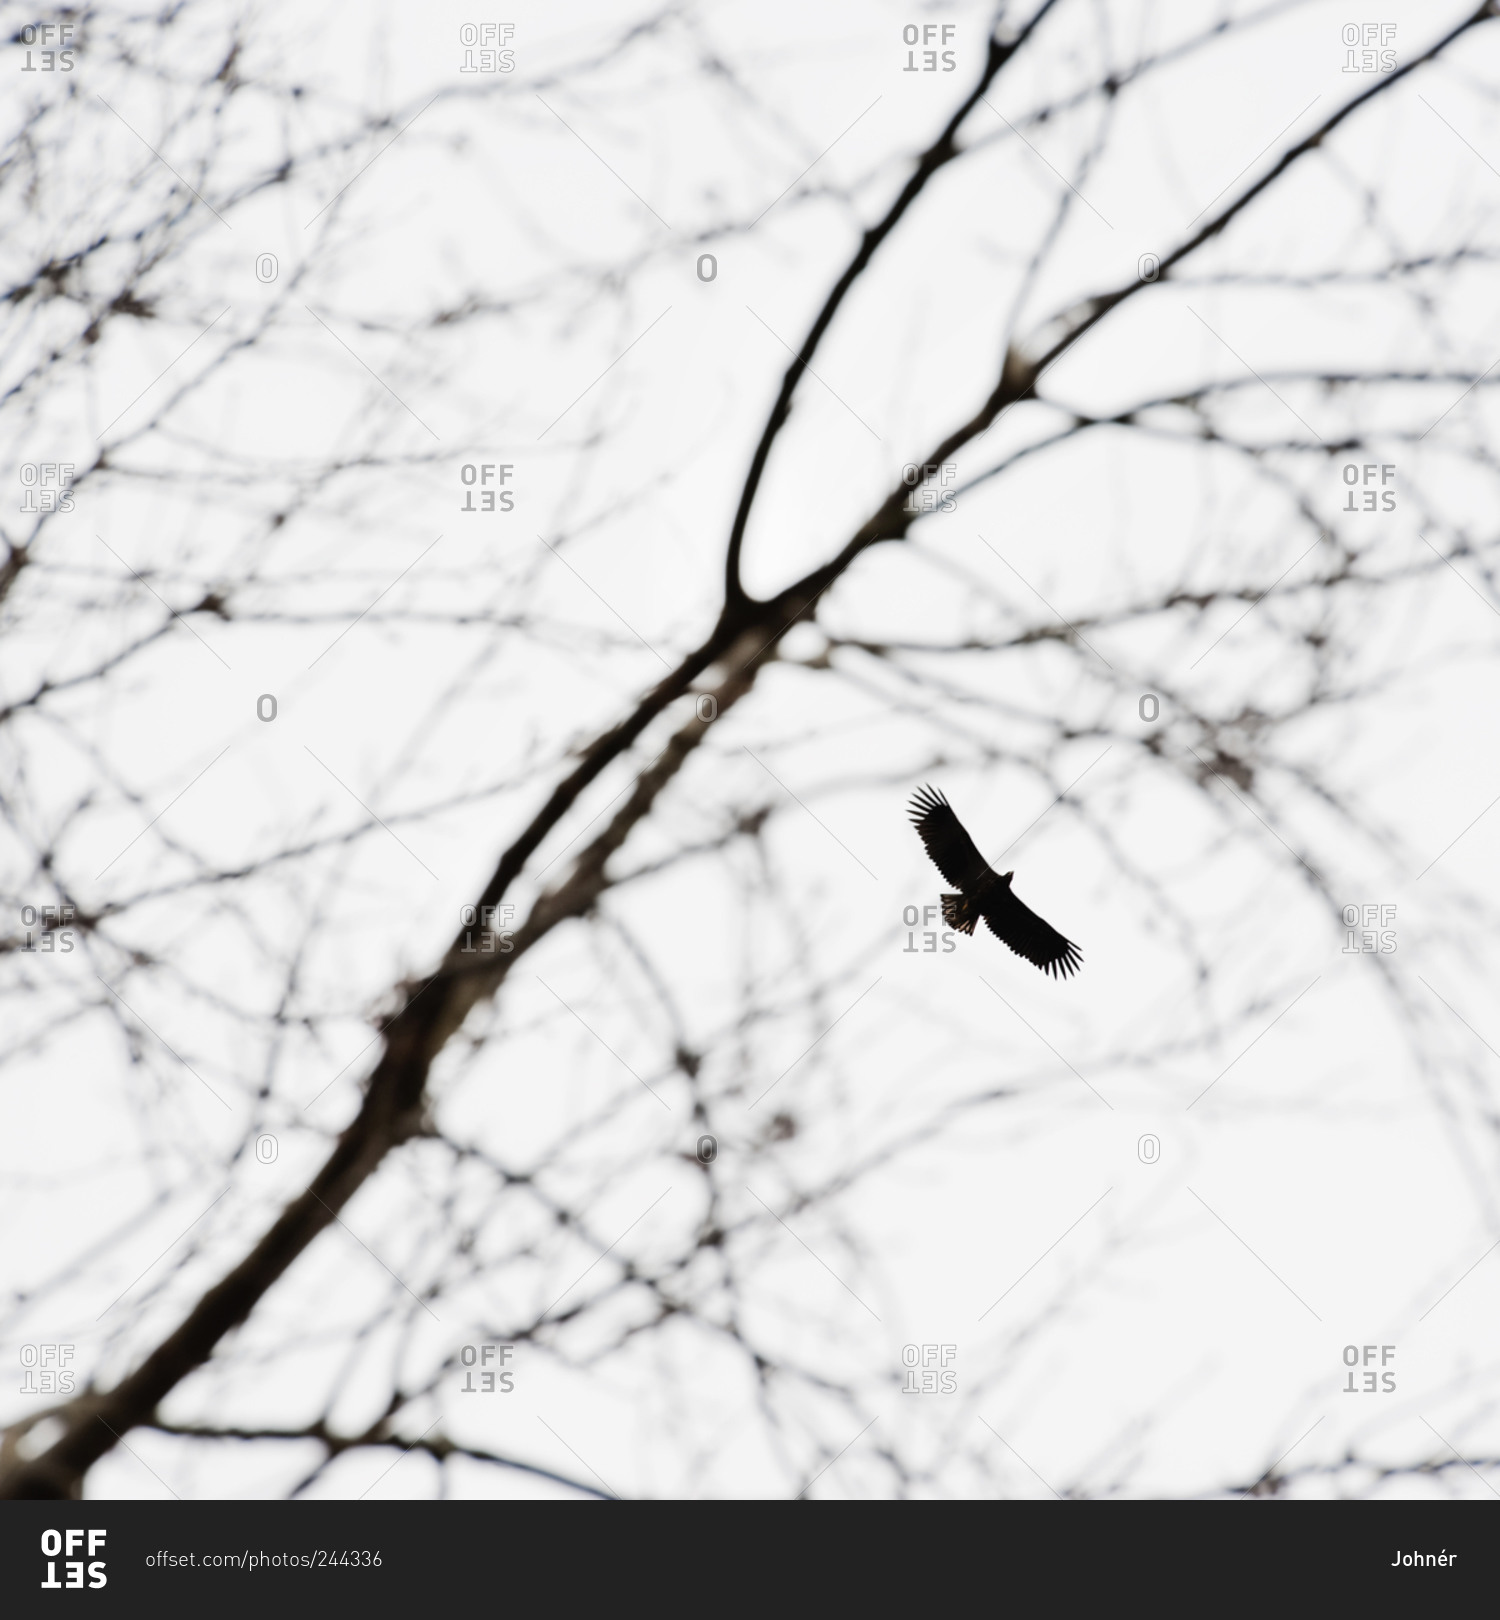 Bird soaring through branches